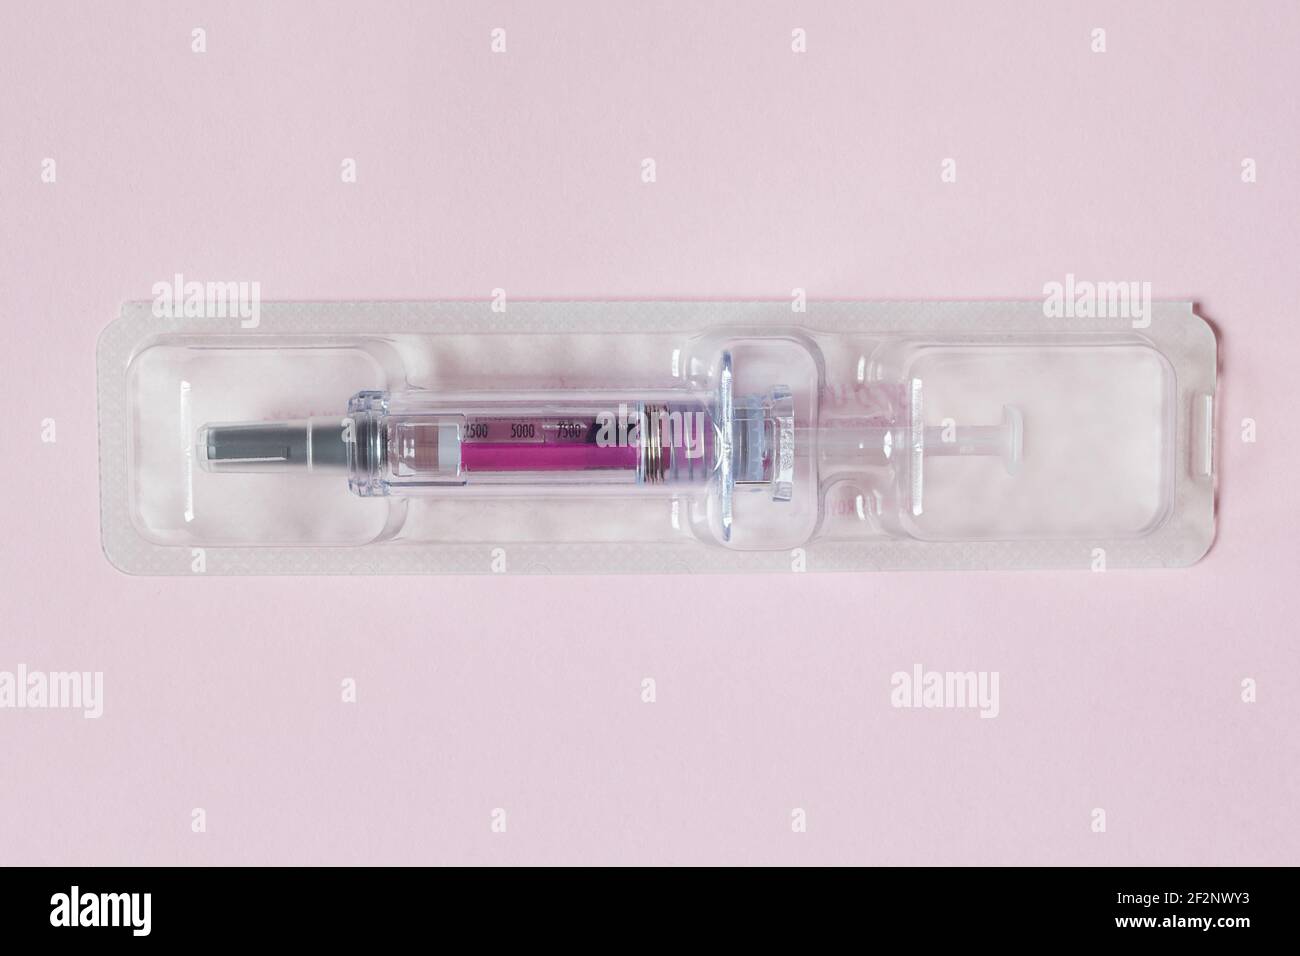 Einzeln versiegelte Spritze mit einer medizinischen Lösung in einem  Kunststoff-Blister auf einem strukturierten rosa Papier Hintergrund  vorgefüllt. Wissenschaft Gesundheit und Medizin Stockfotografie - Alamy